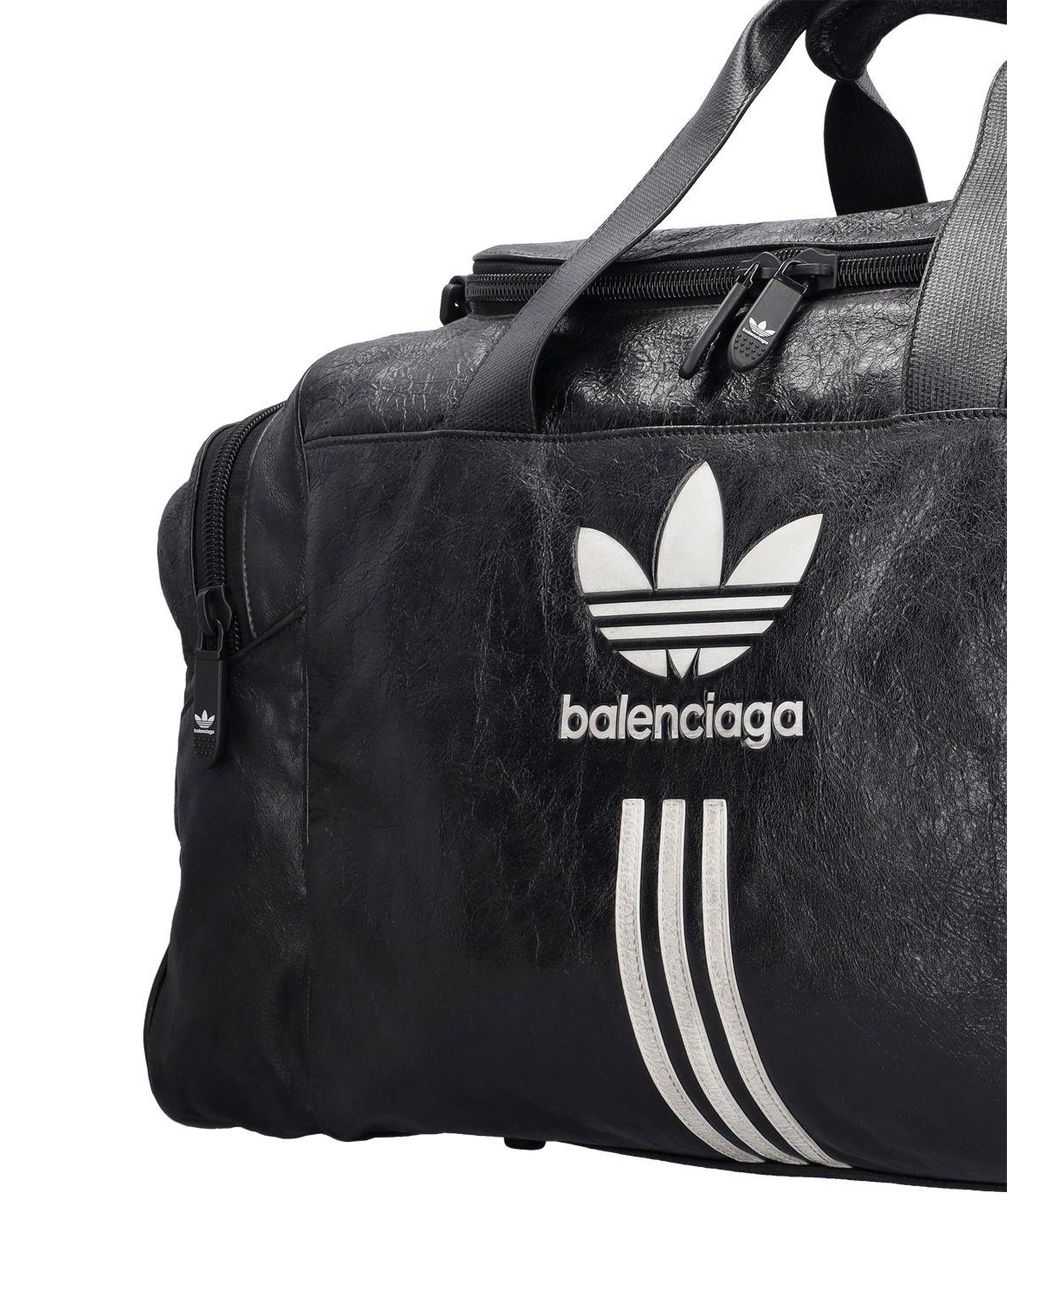 Balenciaga for Black in Gym | Adidas Lyst Bag Men Canada